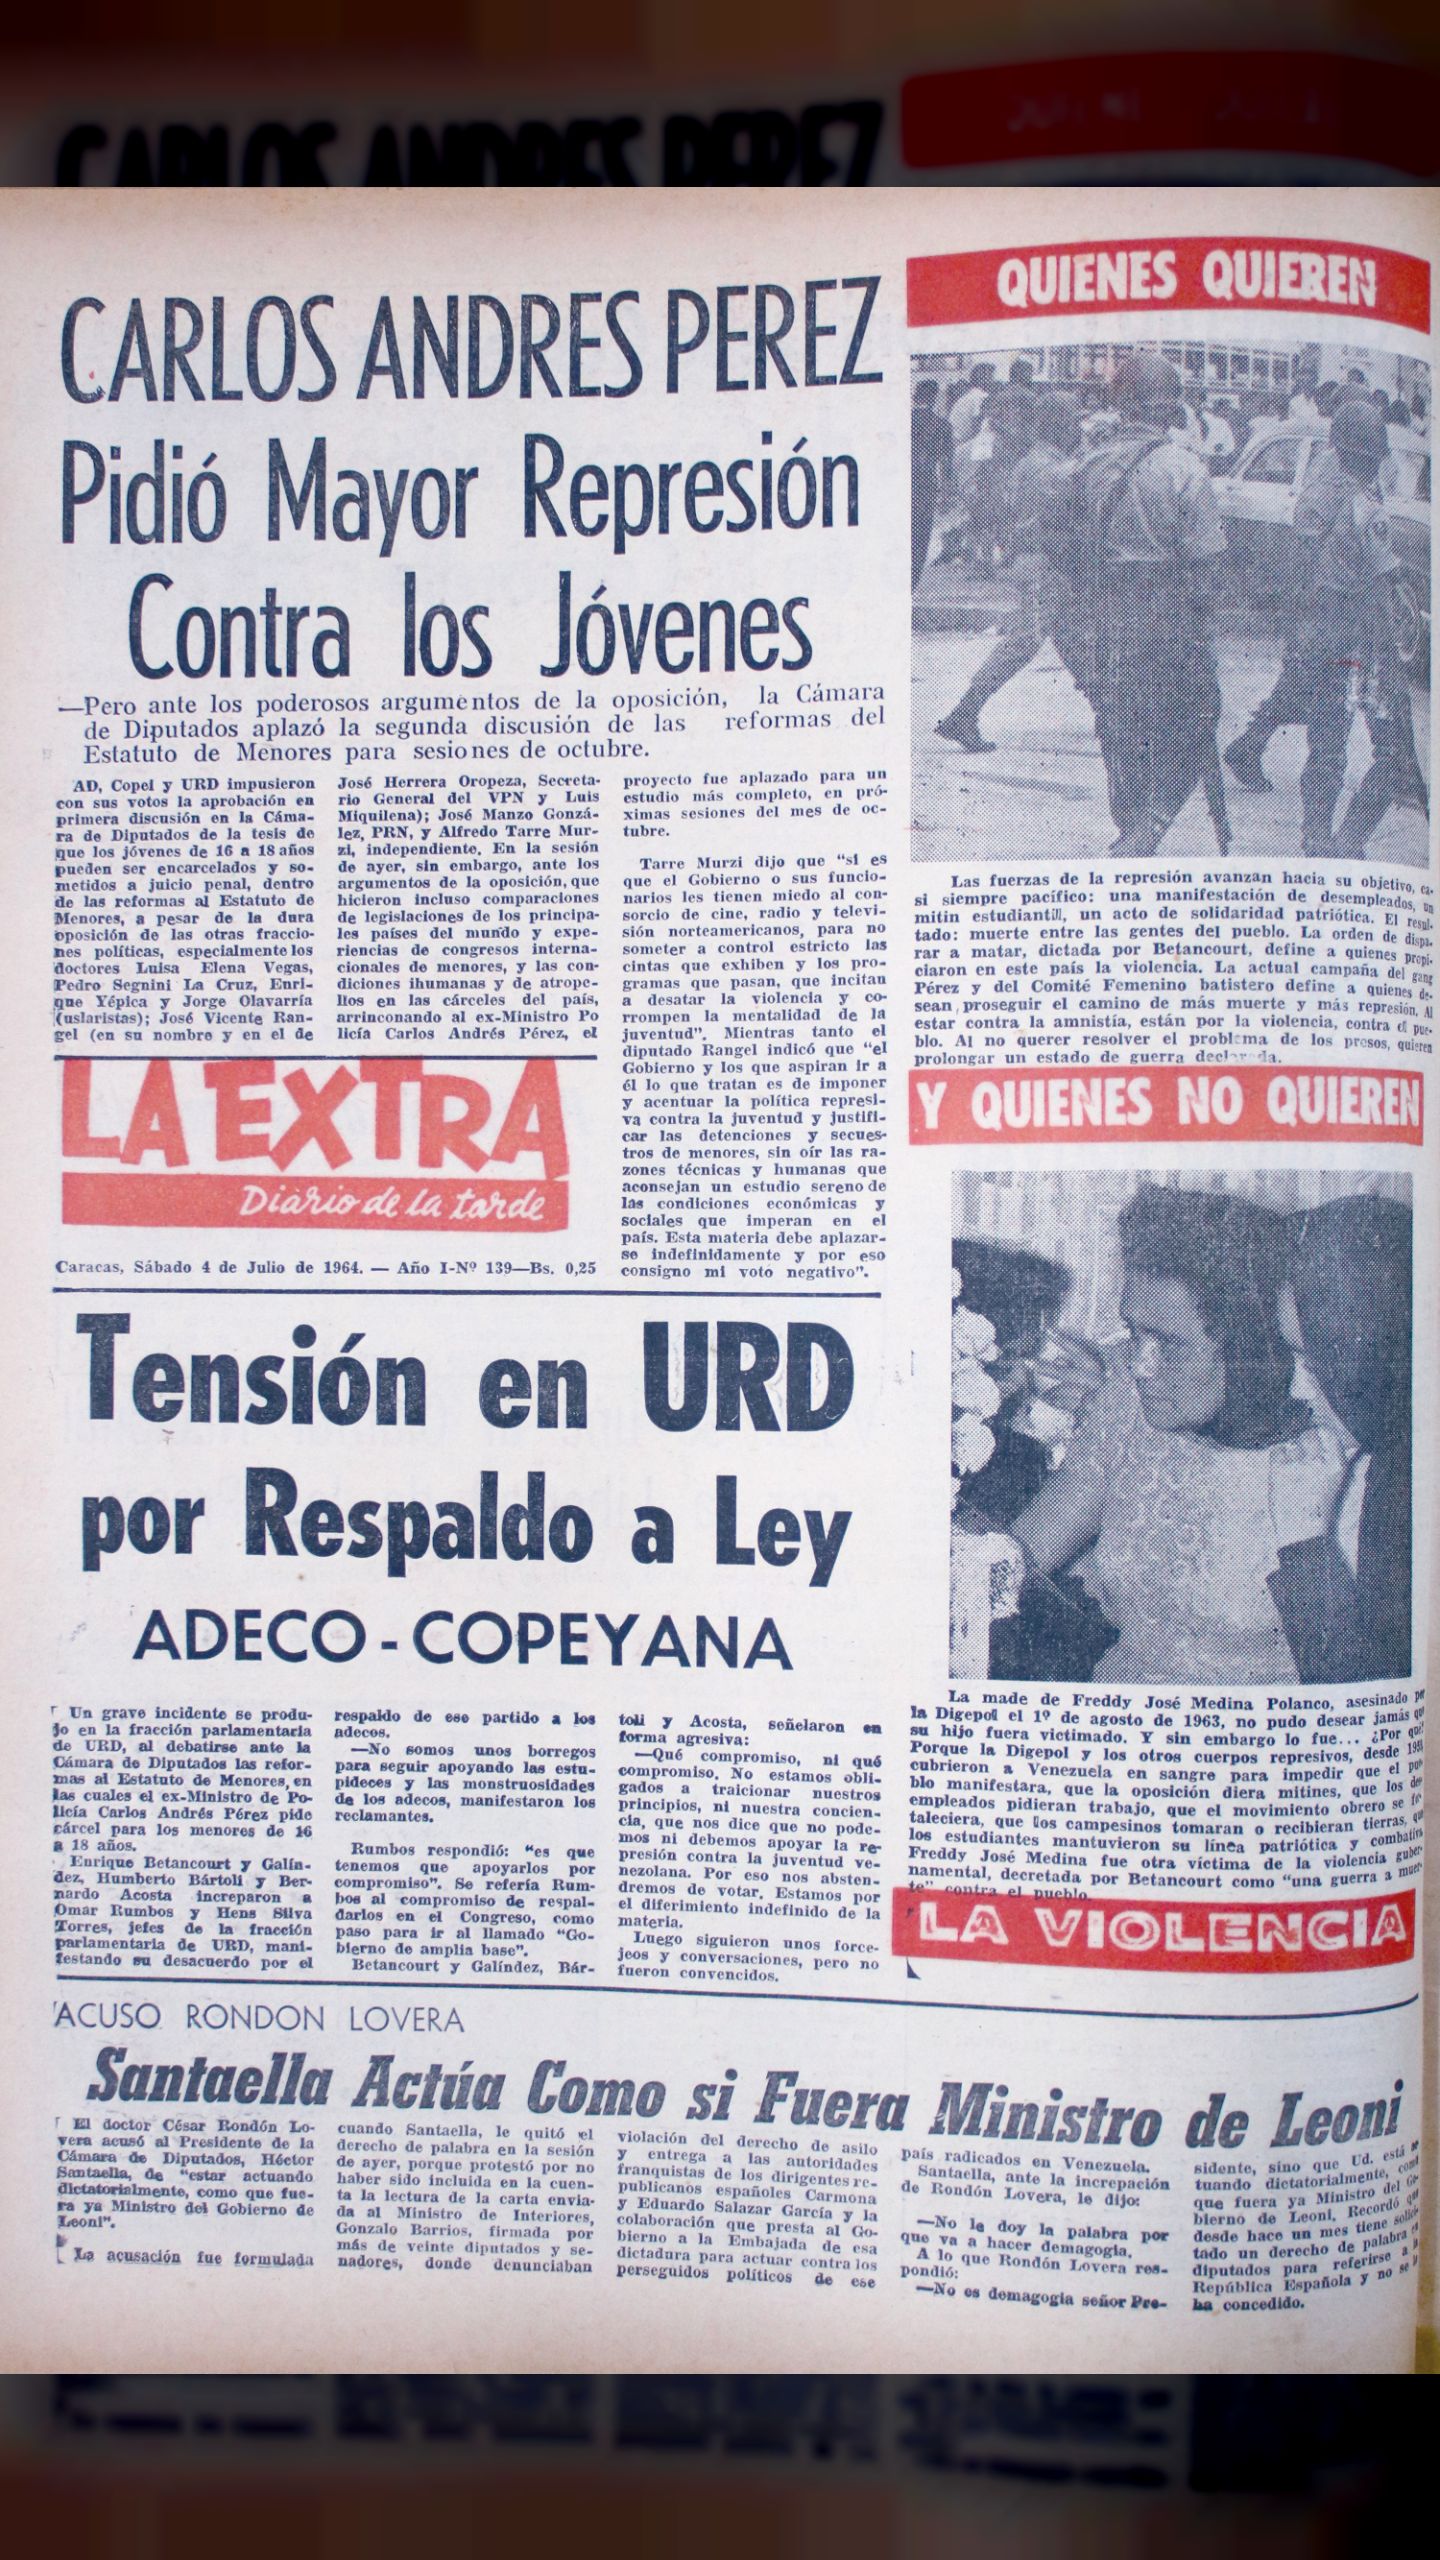 Carlos Andrés Pérez pidió mayor represión contra los jóvenes (La Extra, 4 de julio 1964)